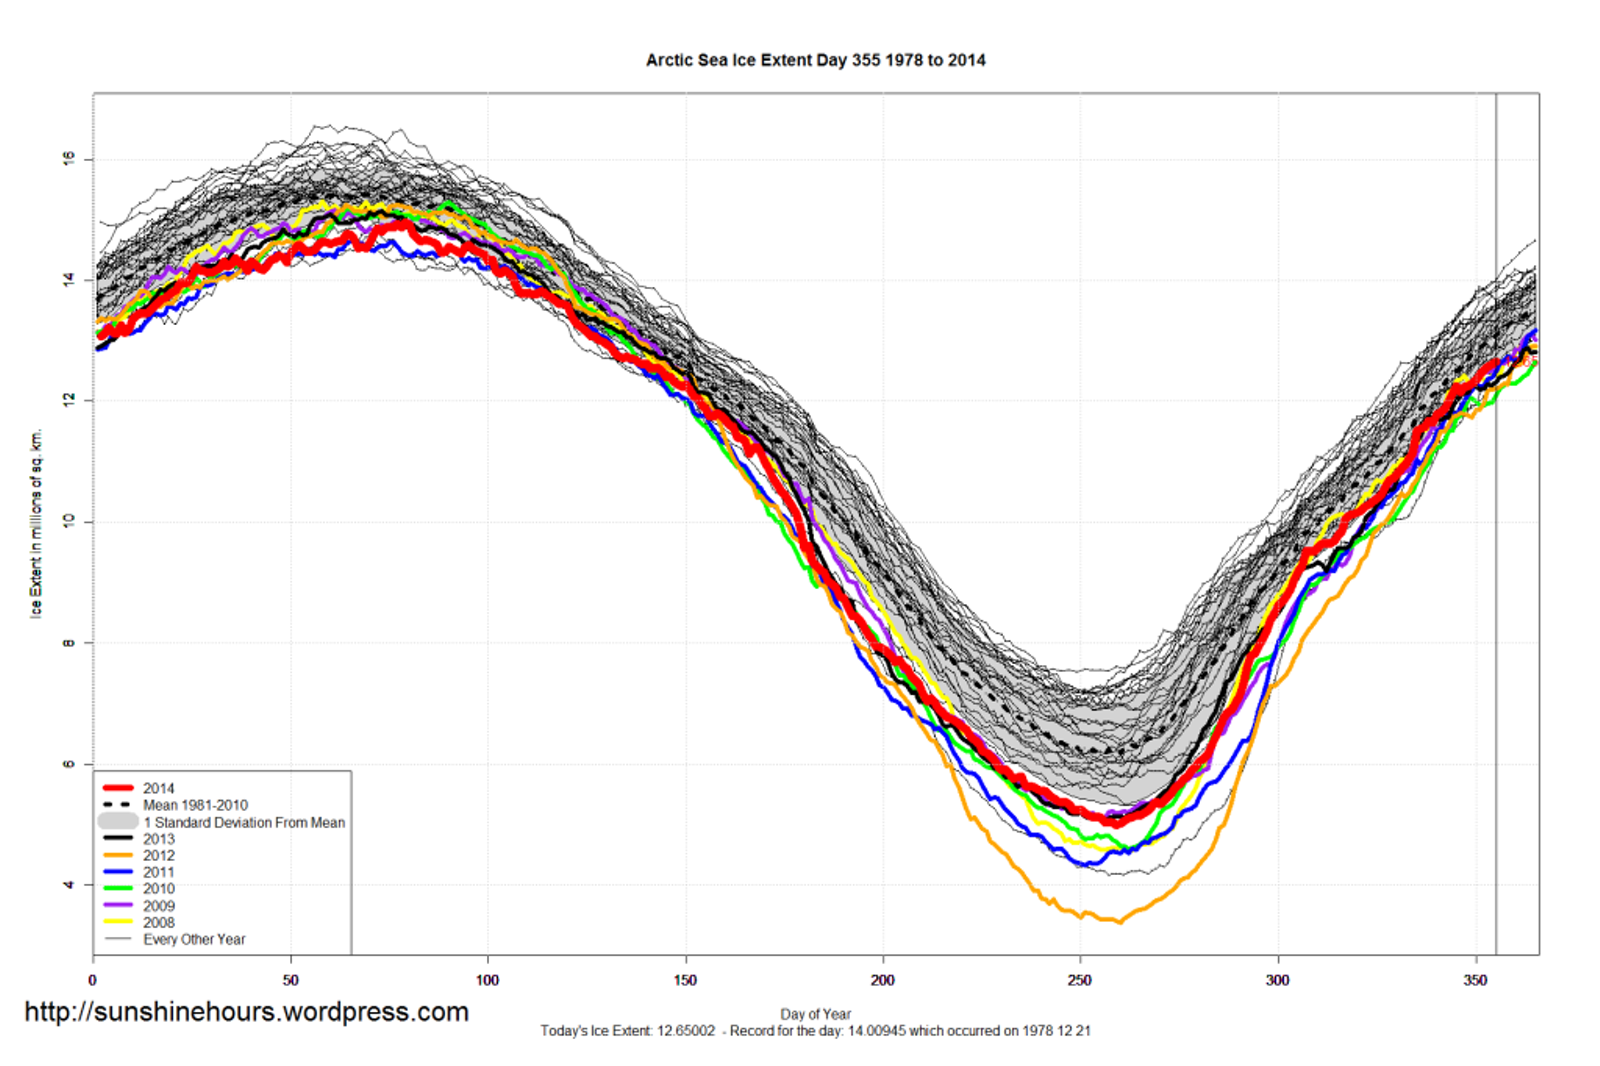 arctic_sea_ice_extent_2014_day_355_1981-2010